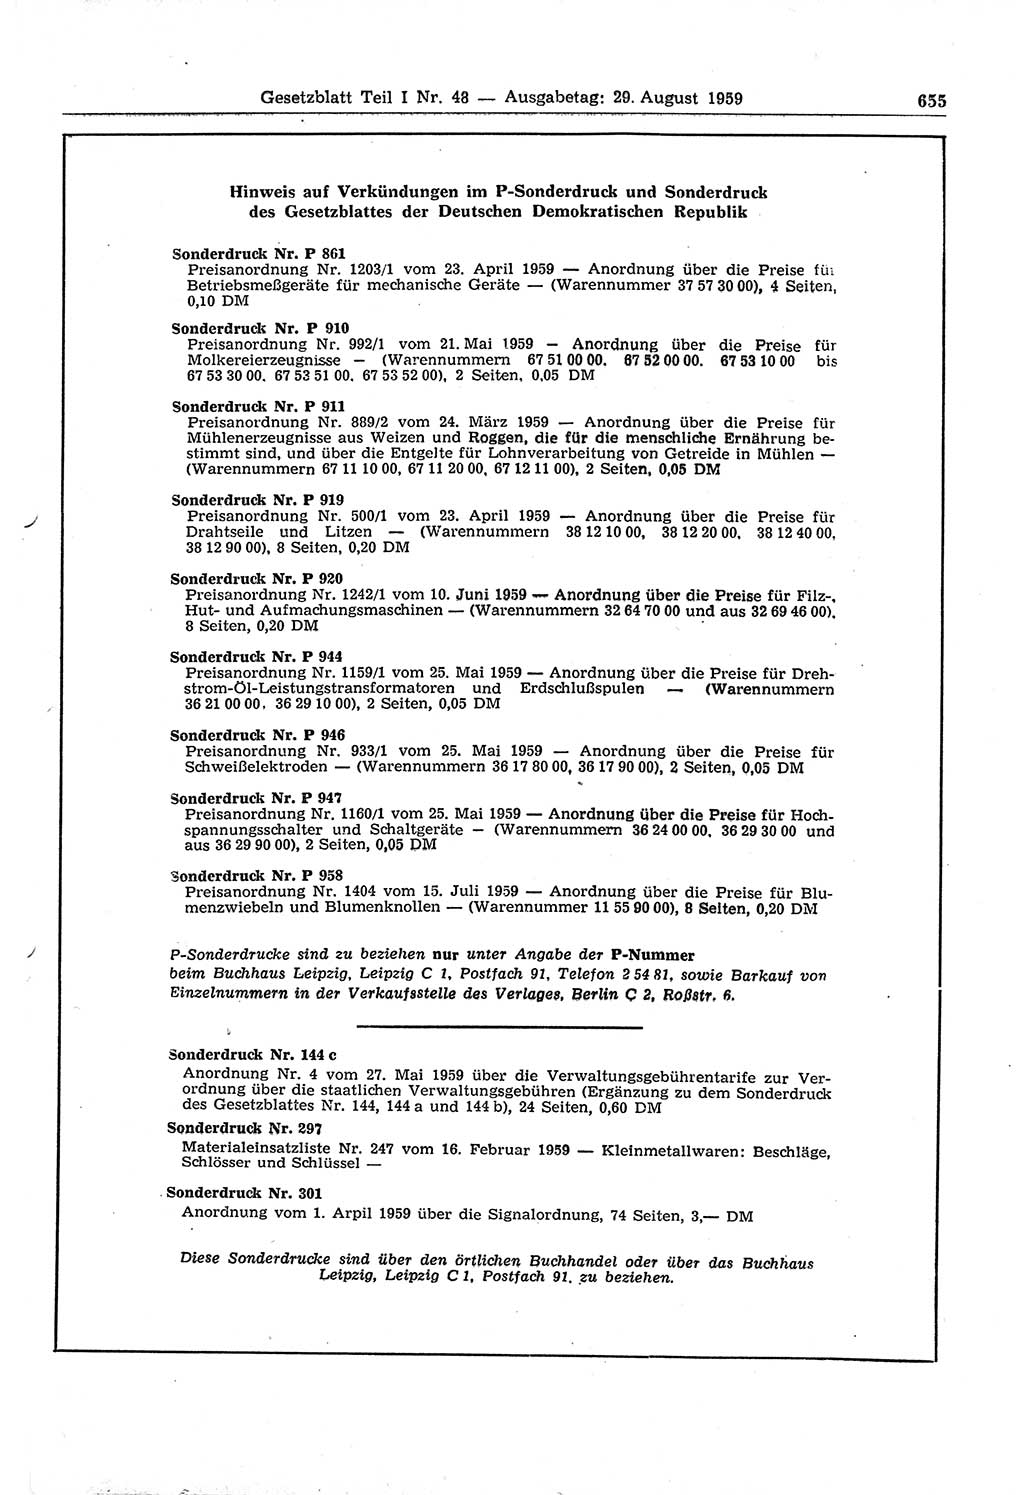 Gesetzblatt (GBl.) der Deutschen Demokratischen Republik (DDR) Teil Ⅰ 1959, Seite 655 (GBl. DDR Ⅰ 1959, S. 655)